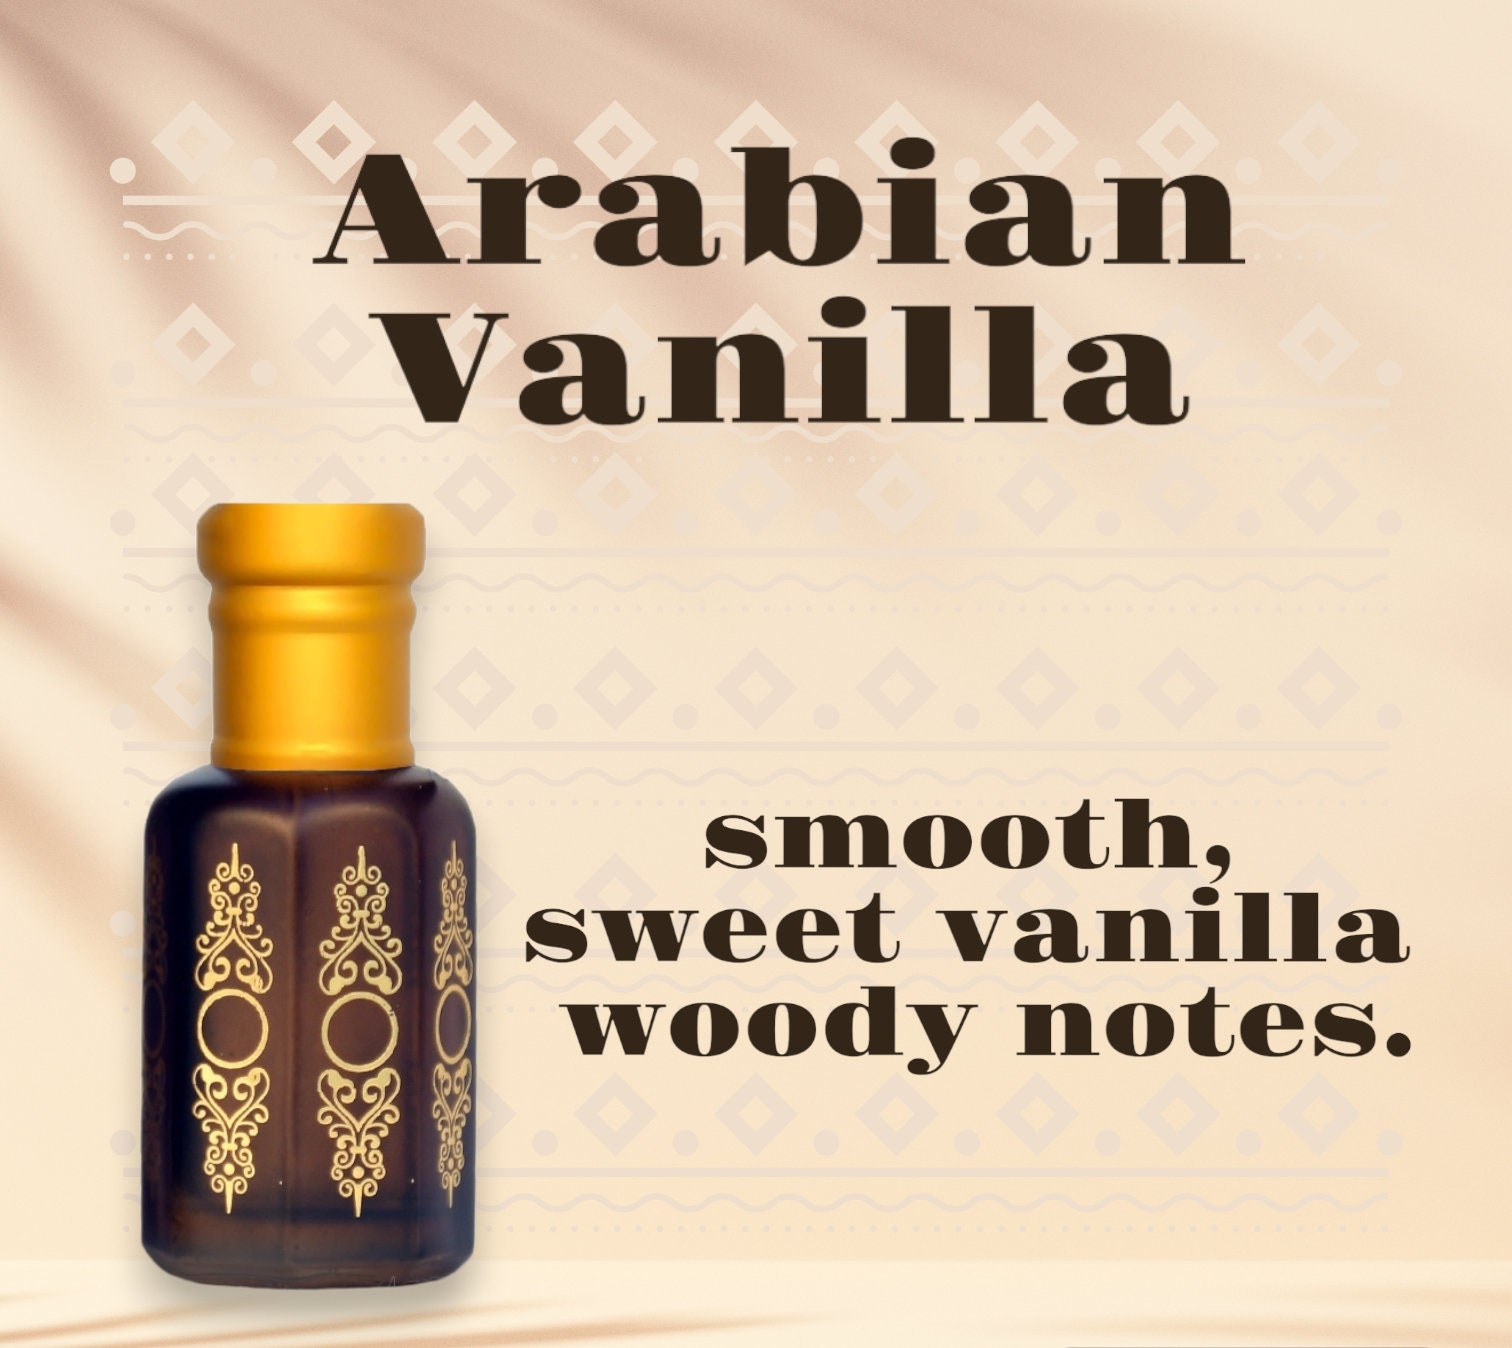 Vanilla Absolute True Vanilla Absolute Pure Vanilla Oil Vanilla Planifolia  Aromatherapy Oil Natural Perfumery Absolute Undiluted 